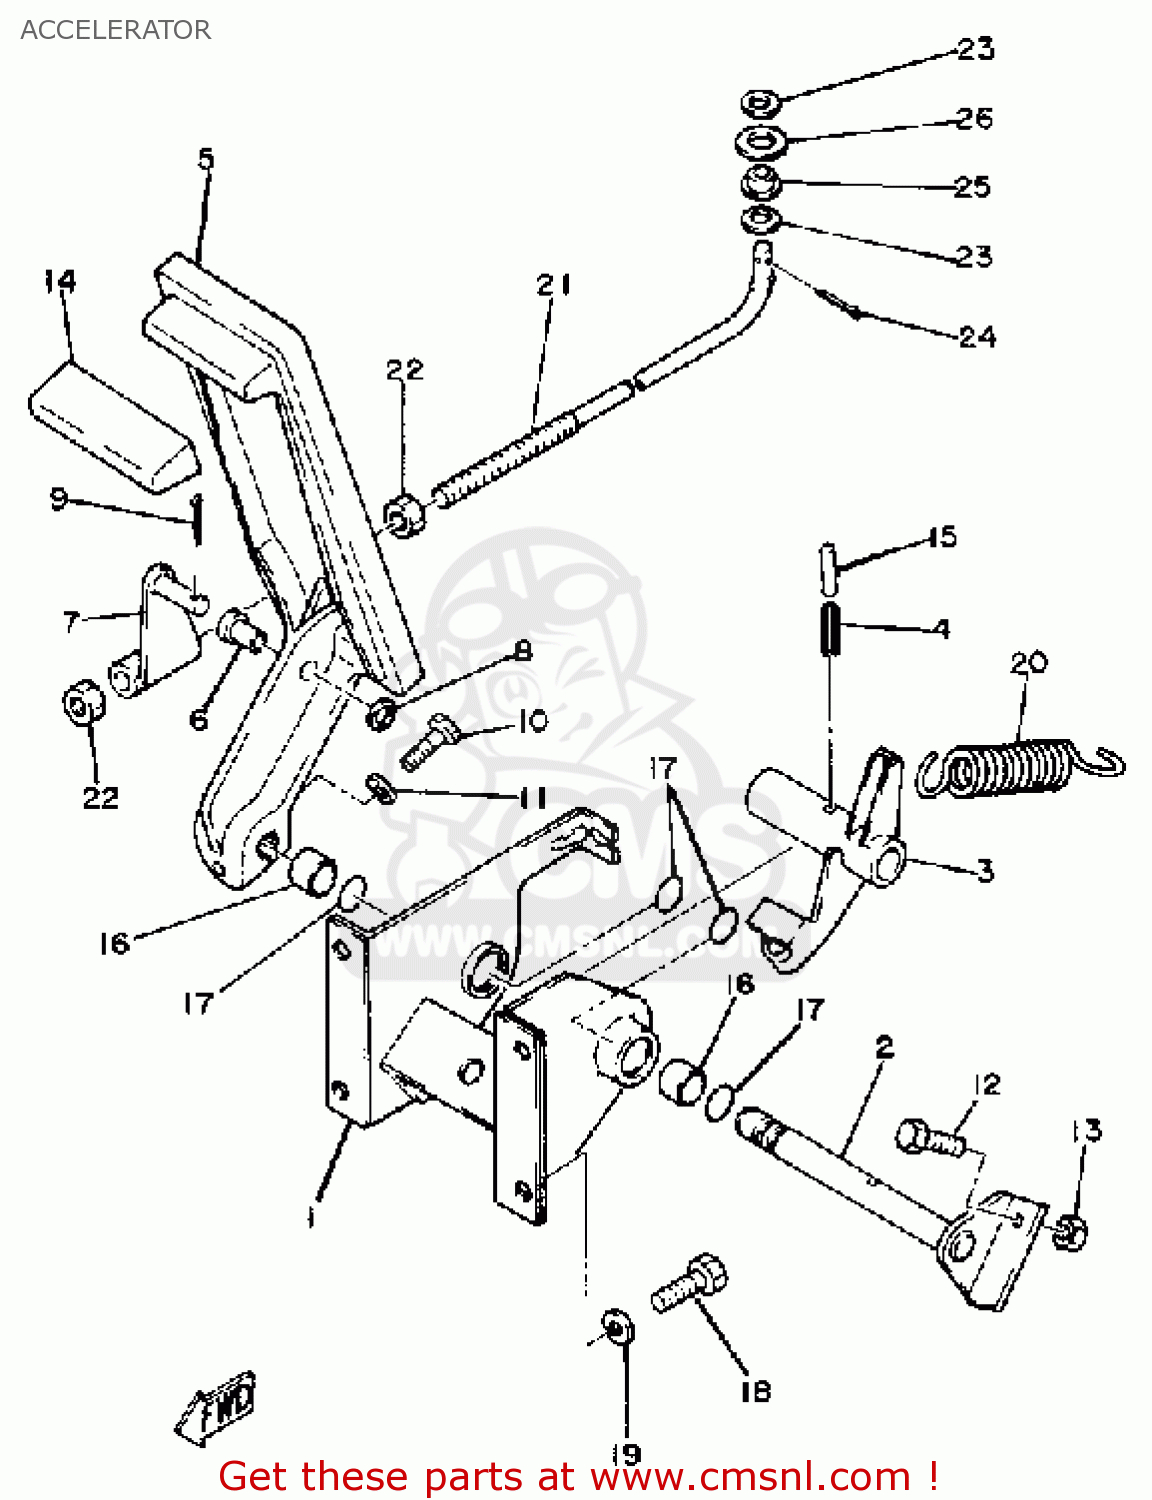 Ez Go Golf Cart Parts Diagram Wrg 2262 Club Car Engine Parts Diagram